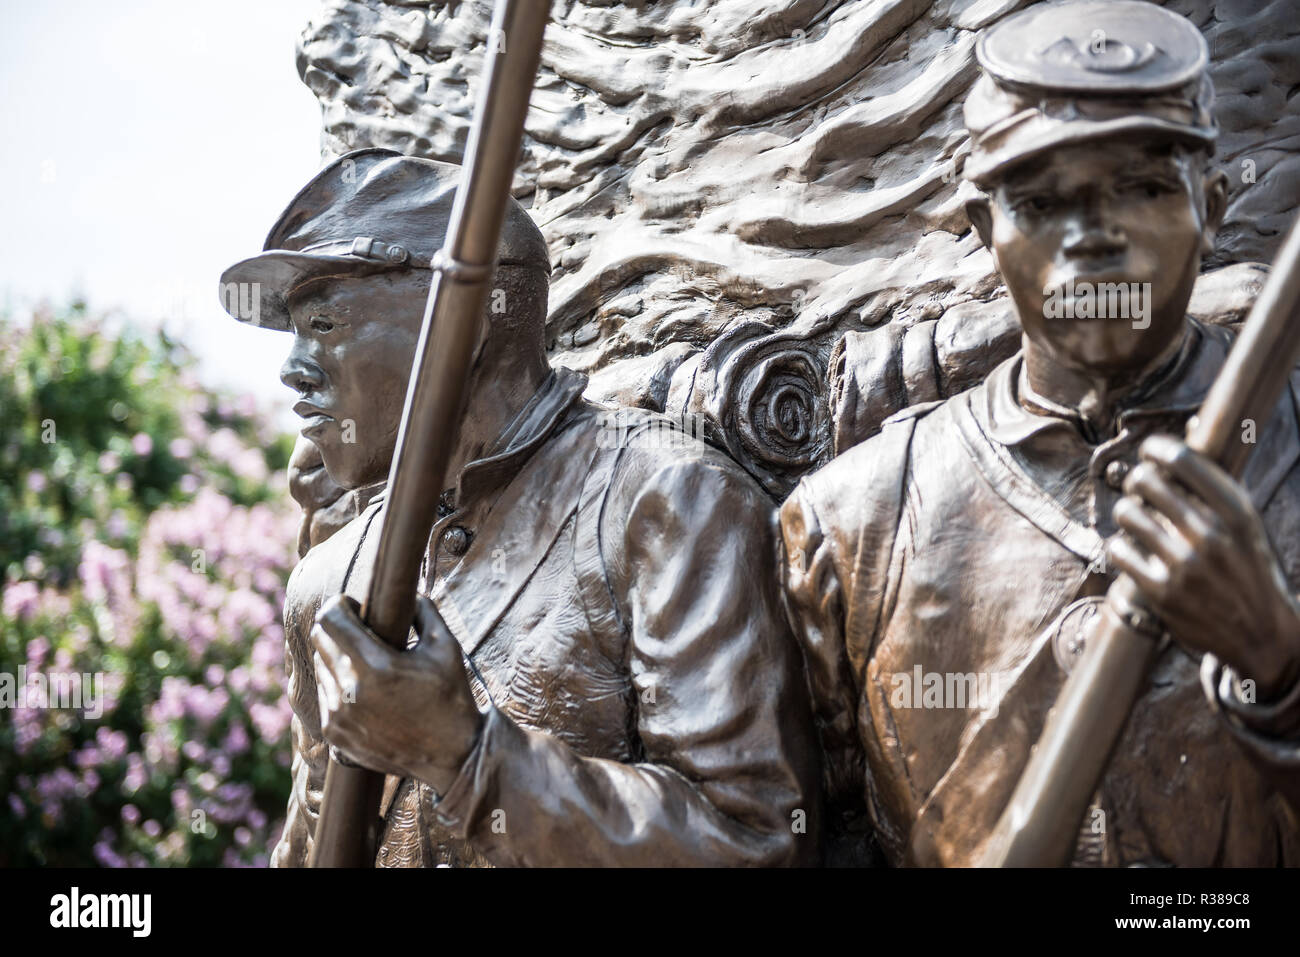 WASHINGTON, DC - l'African American Civil War Memorial commémore le service de 209 145 soldats afro-américains et environ 7 000 2 145 soldats blancs et hispaniques, s'élevant à près de 220 000 à environ 20 000, plus les marins non séparées, qui se sont battus pour l'Union dans la guerre civile américaine, principalement parmi les 175 régiments de troupes de couleur aux États-Unis. Au cœur du mémorial est une sculpture par Ed Hamilton intitulé l'esprit de liberté. Elle est entourée par des panneaux indiquant les noms de ceux qui ont servi pendant la guerre. Le musée est situé dans le nord-ouest de Washington DC dans la rue U nei Banque D'Images